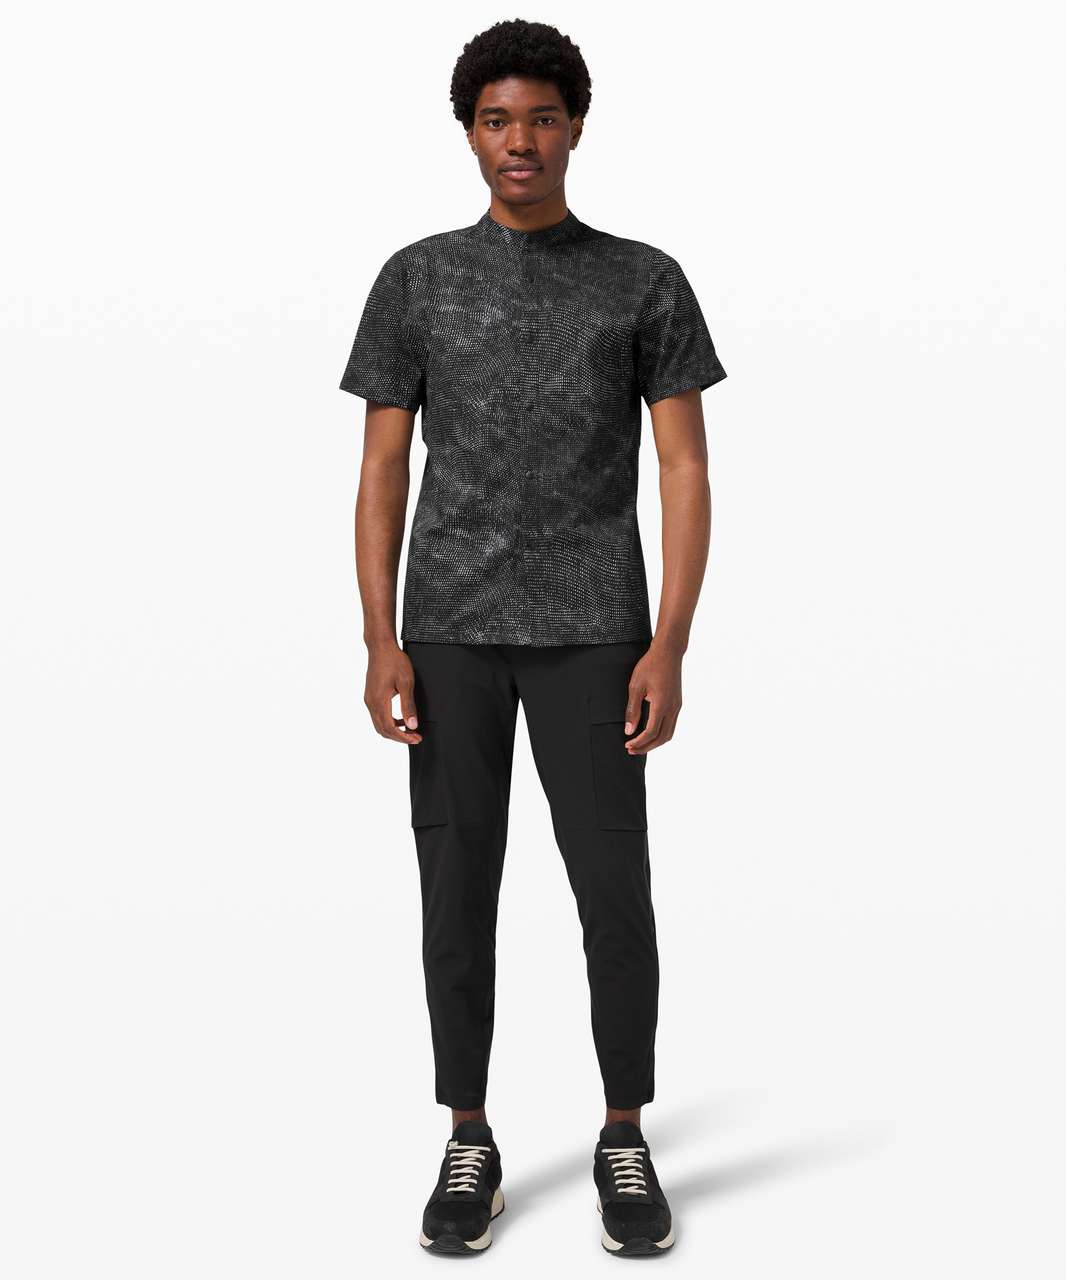 Lululemon Airing Easy Stand Collar Shirt - Digital Drift Black Multi